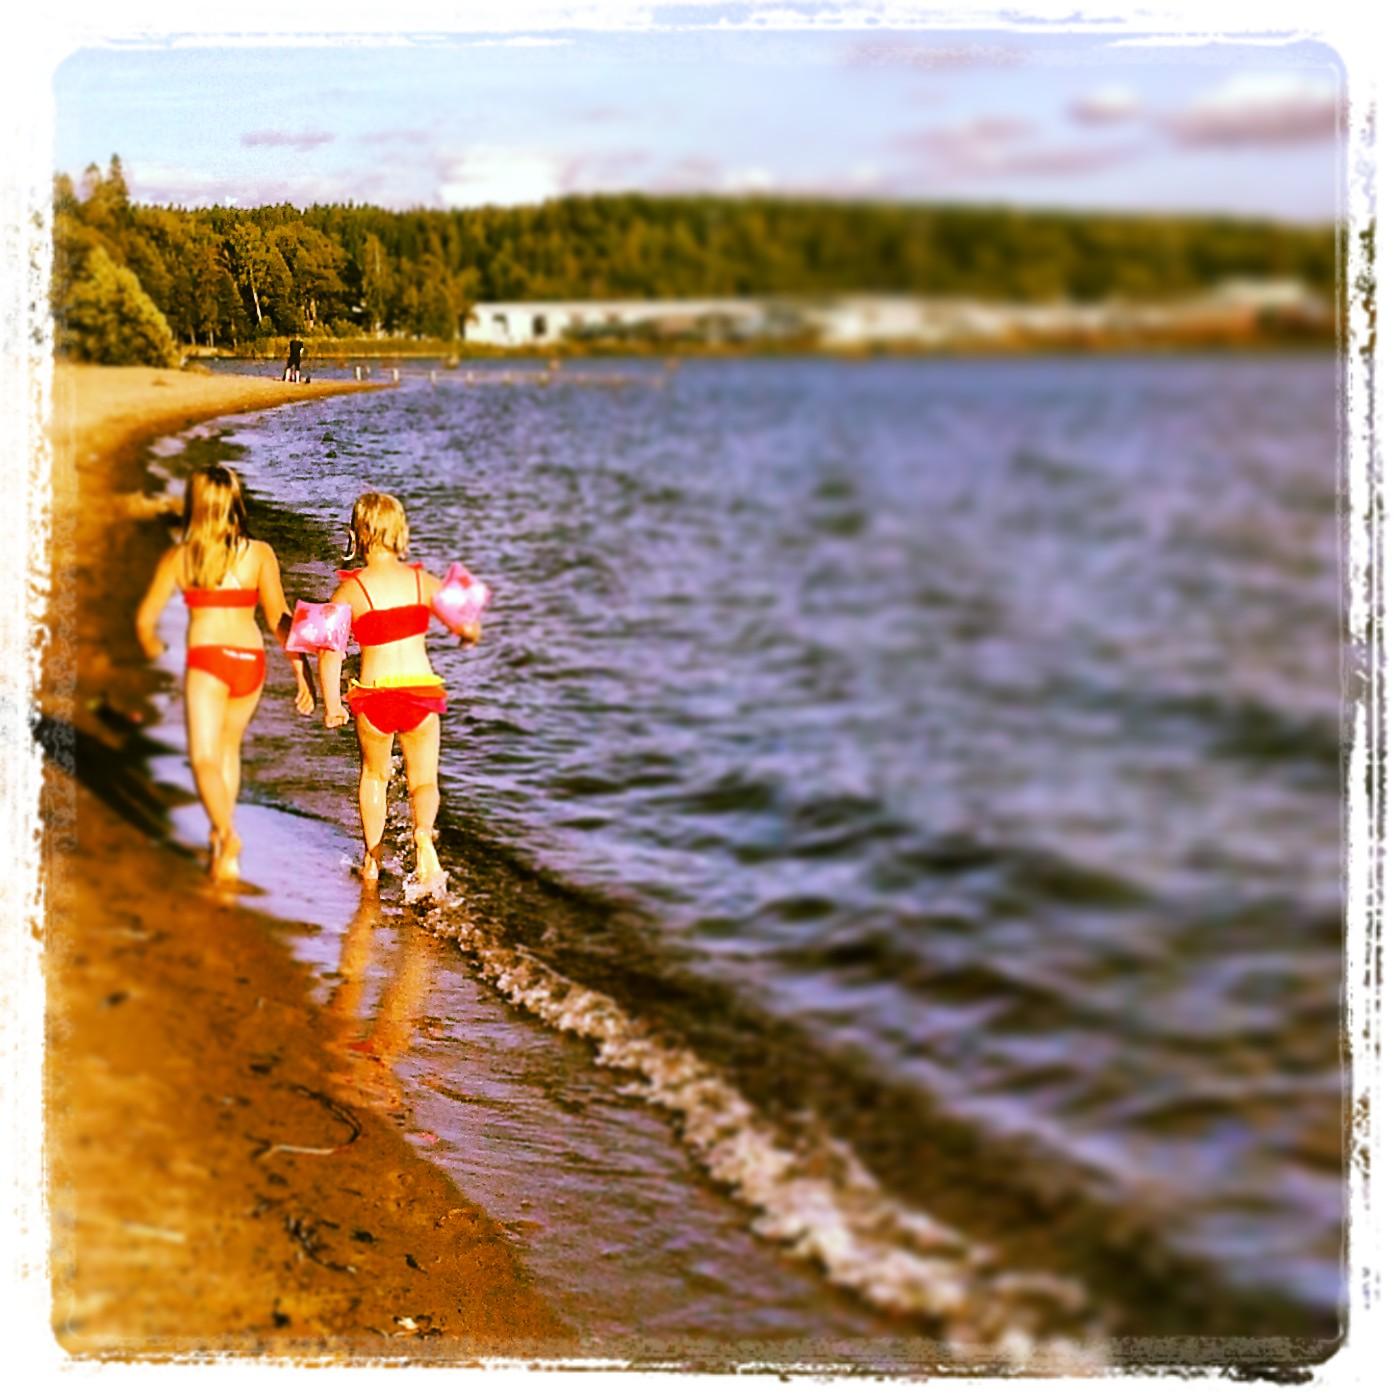 Detta är en sommarkväll på stranden i Karlskoga med mina 3 barn...underbart att se deras glädje av sommaren